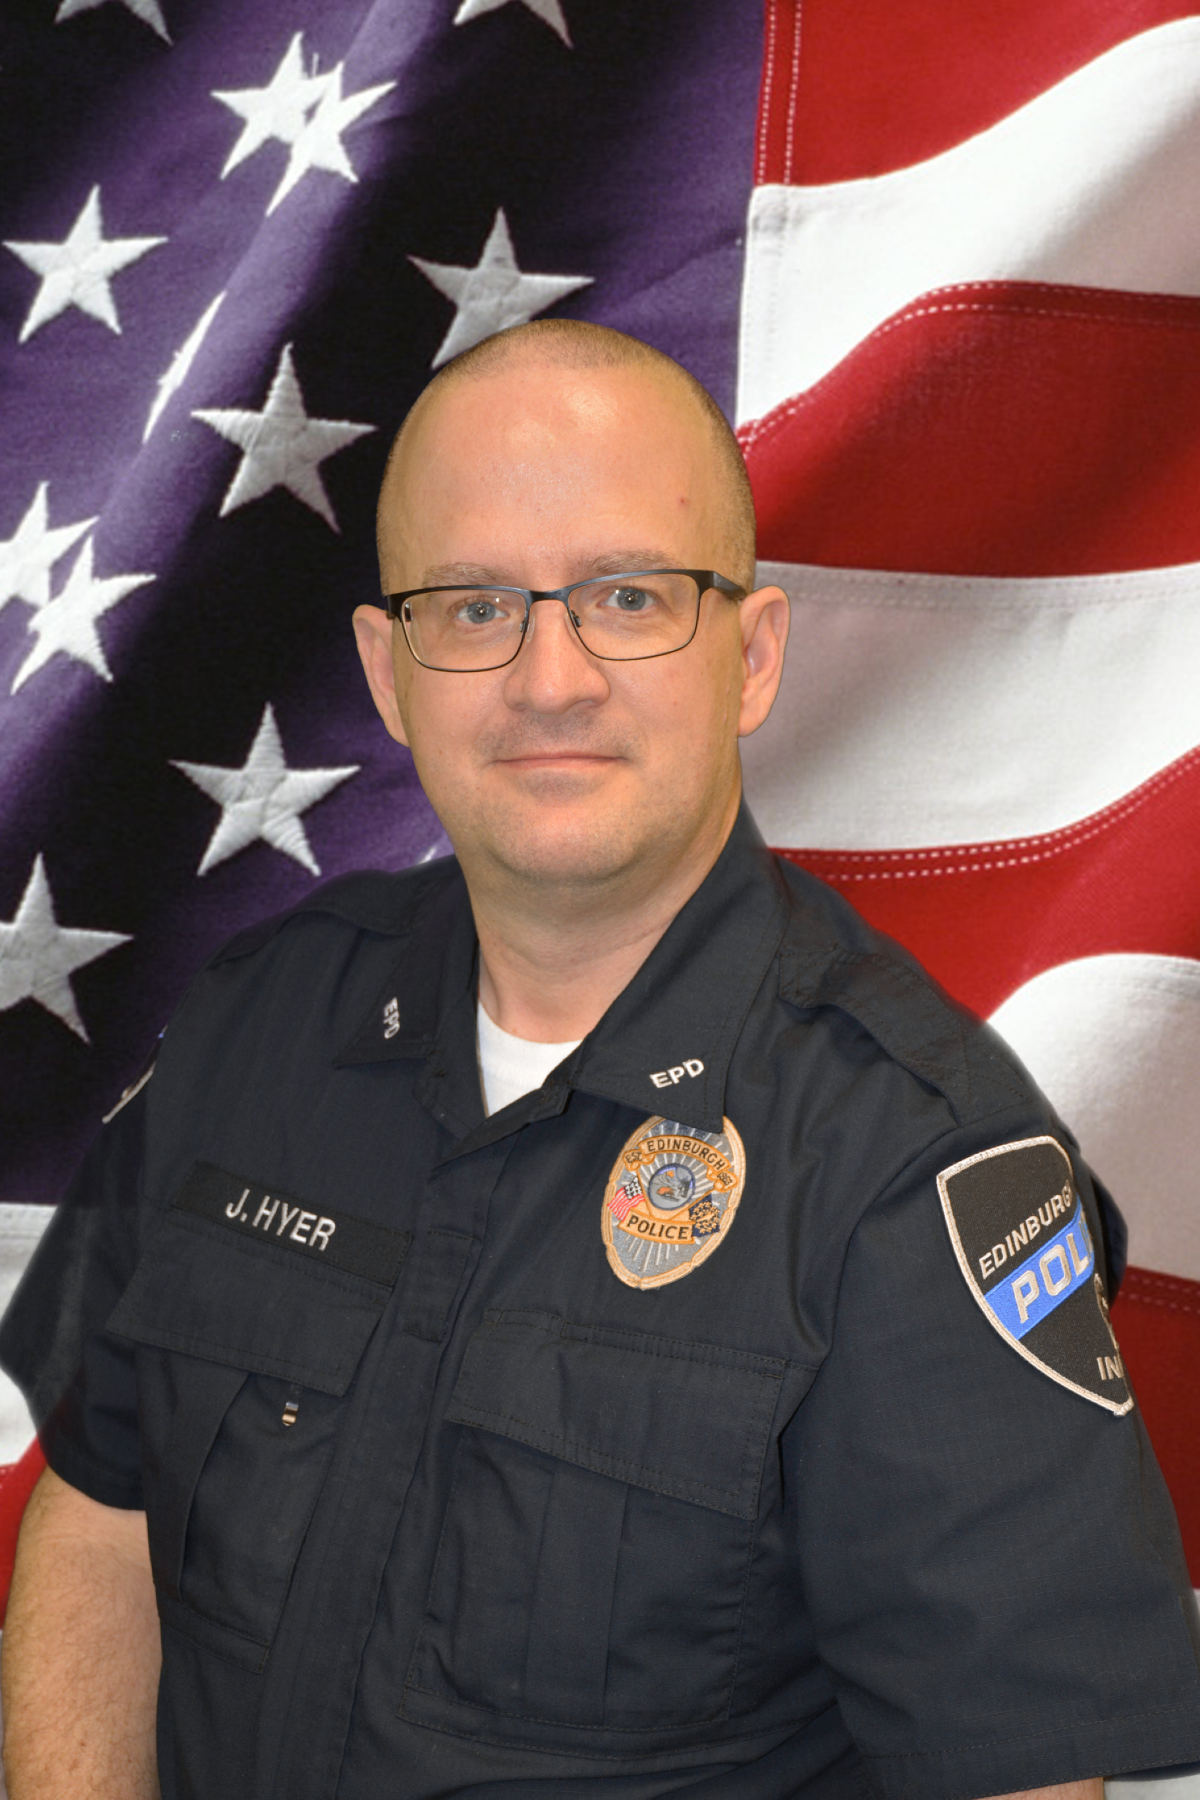 Chaplain/Officer Jason Hyer